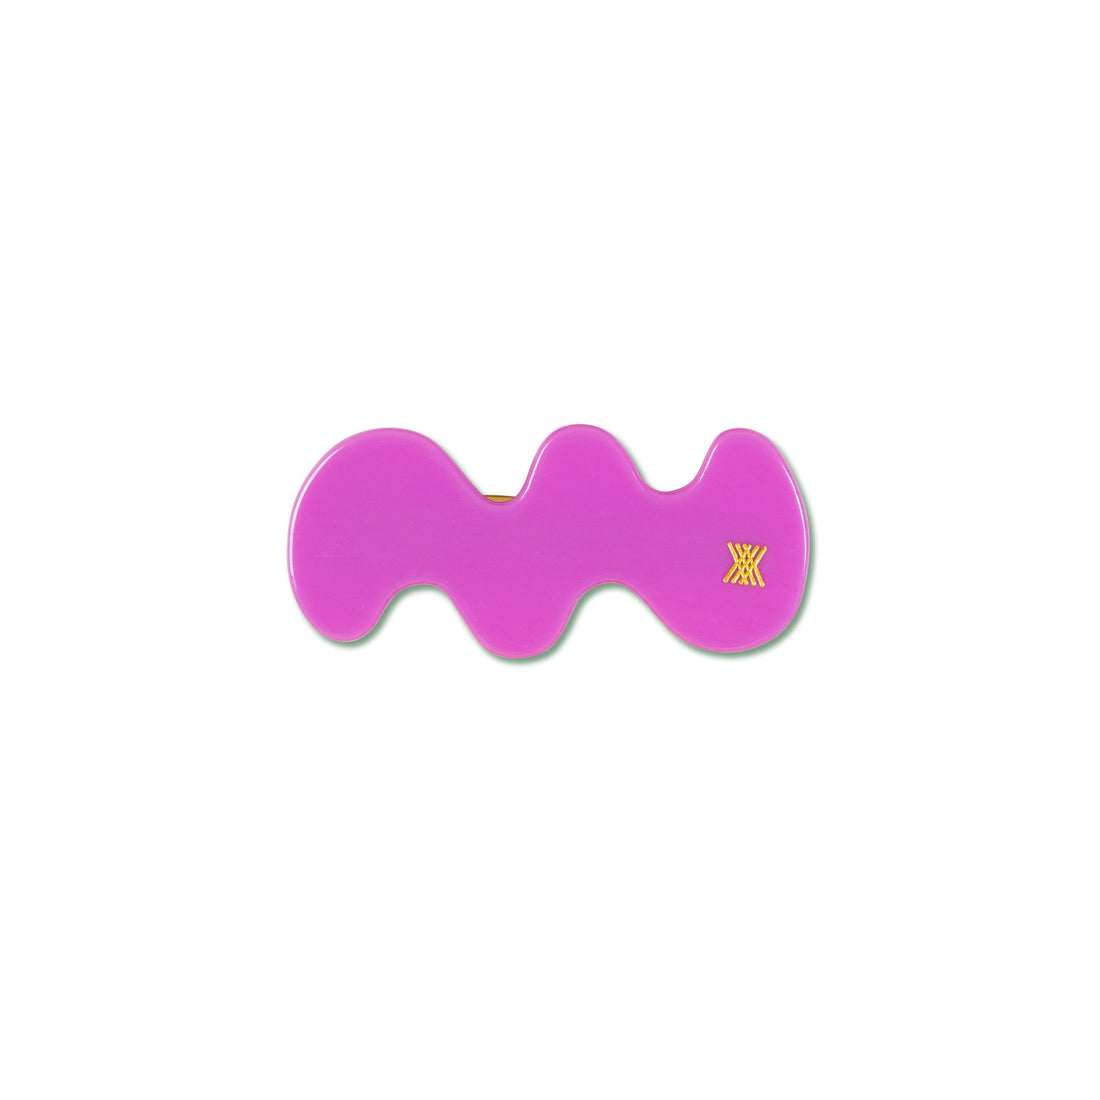 Repose Ams - Wavy hair clip - Purple Violet